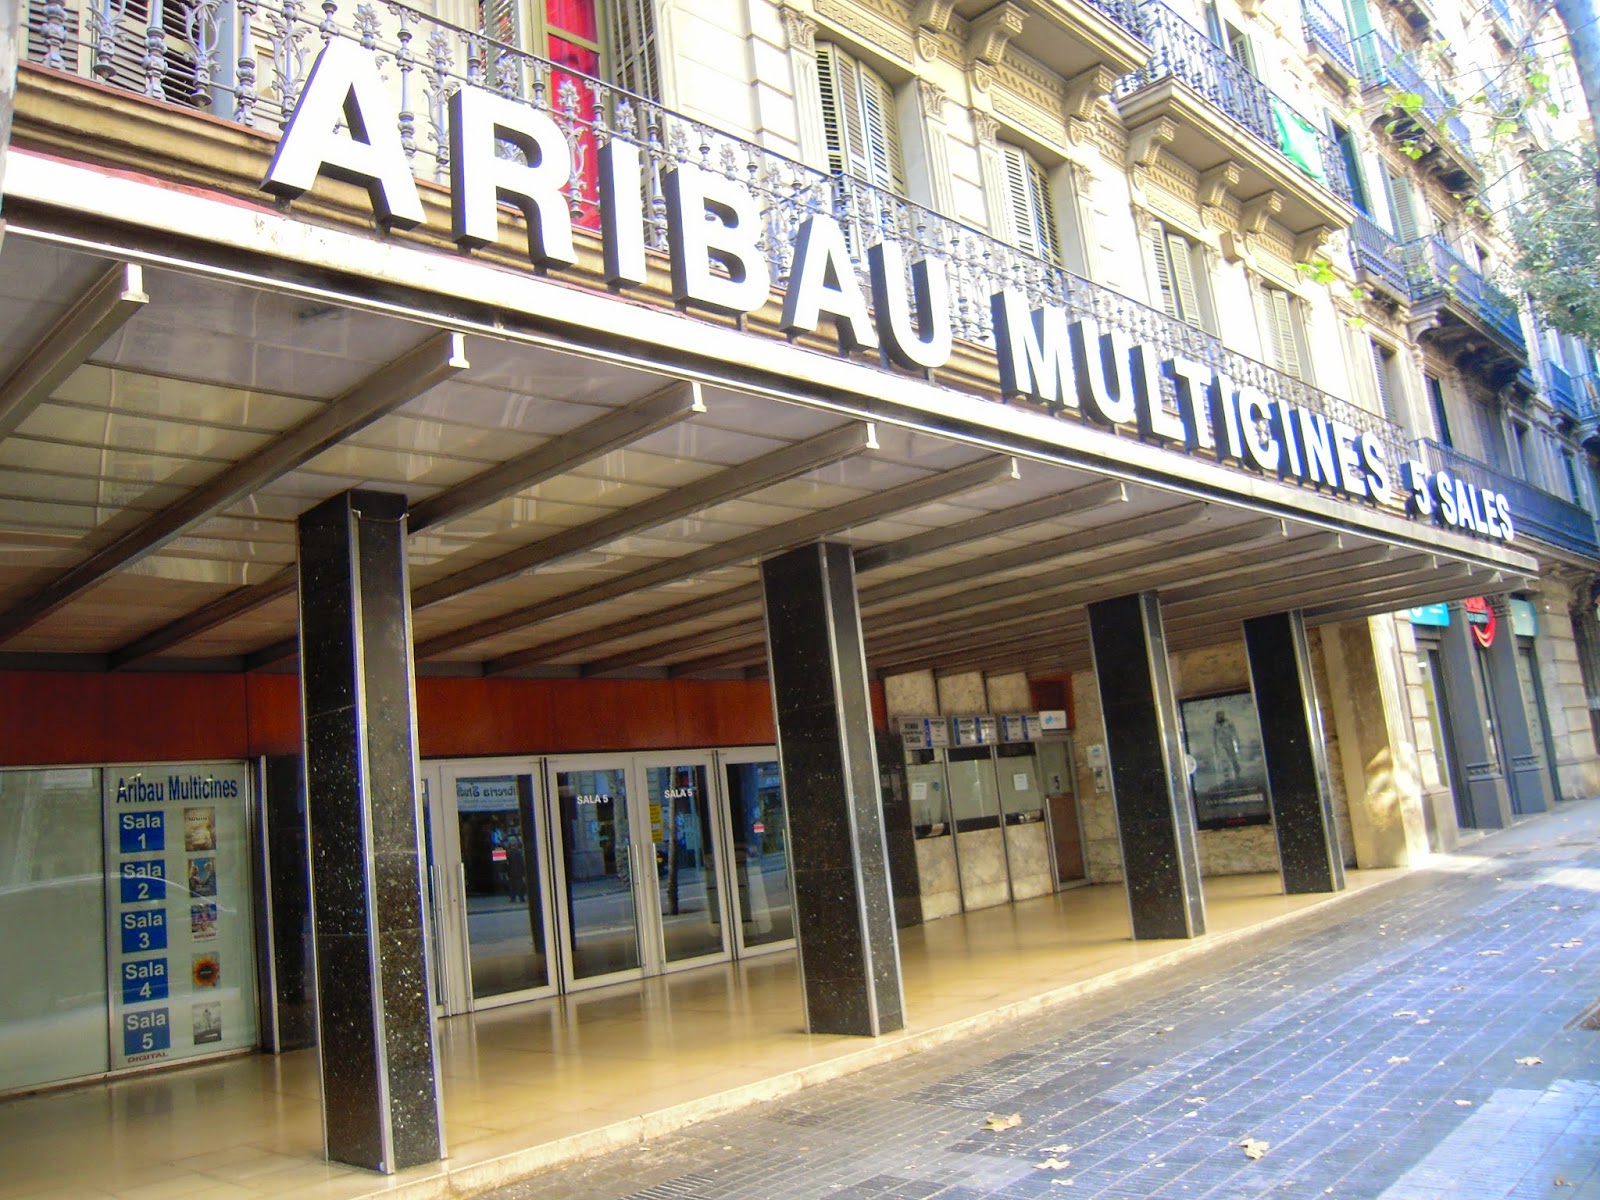 Blog de ocio y cultura para tu tiempo libre | va de Barcelona: Día del espectador en los cines ...